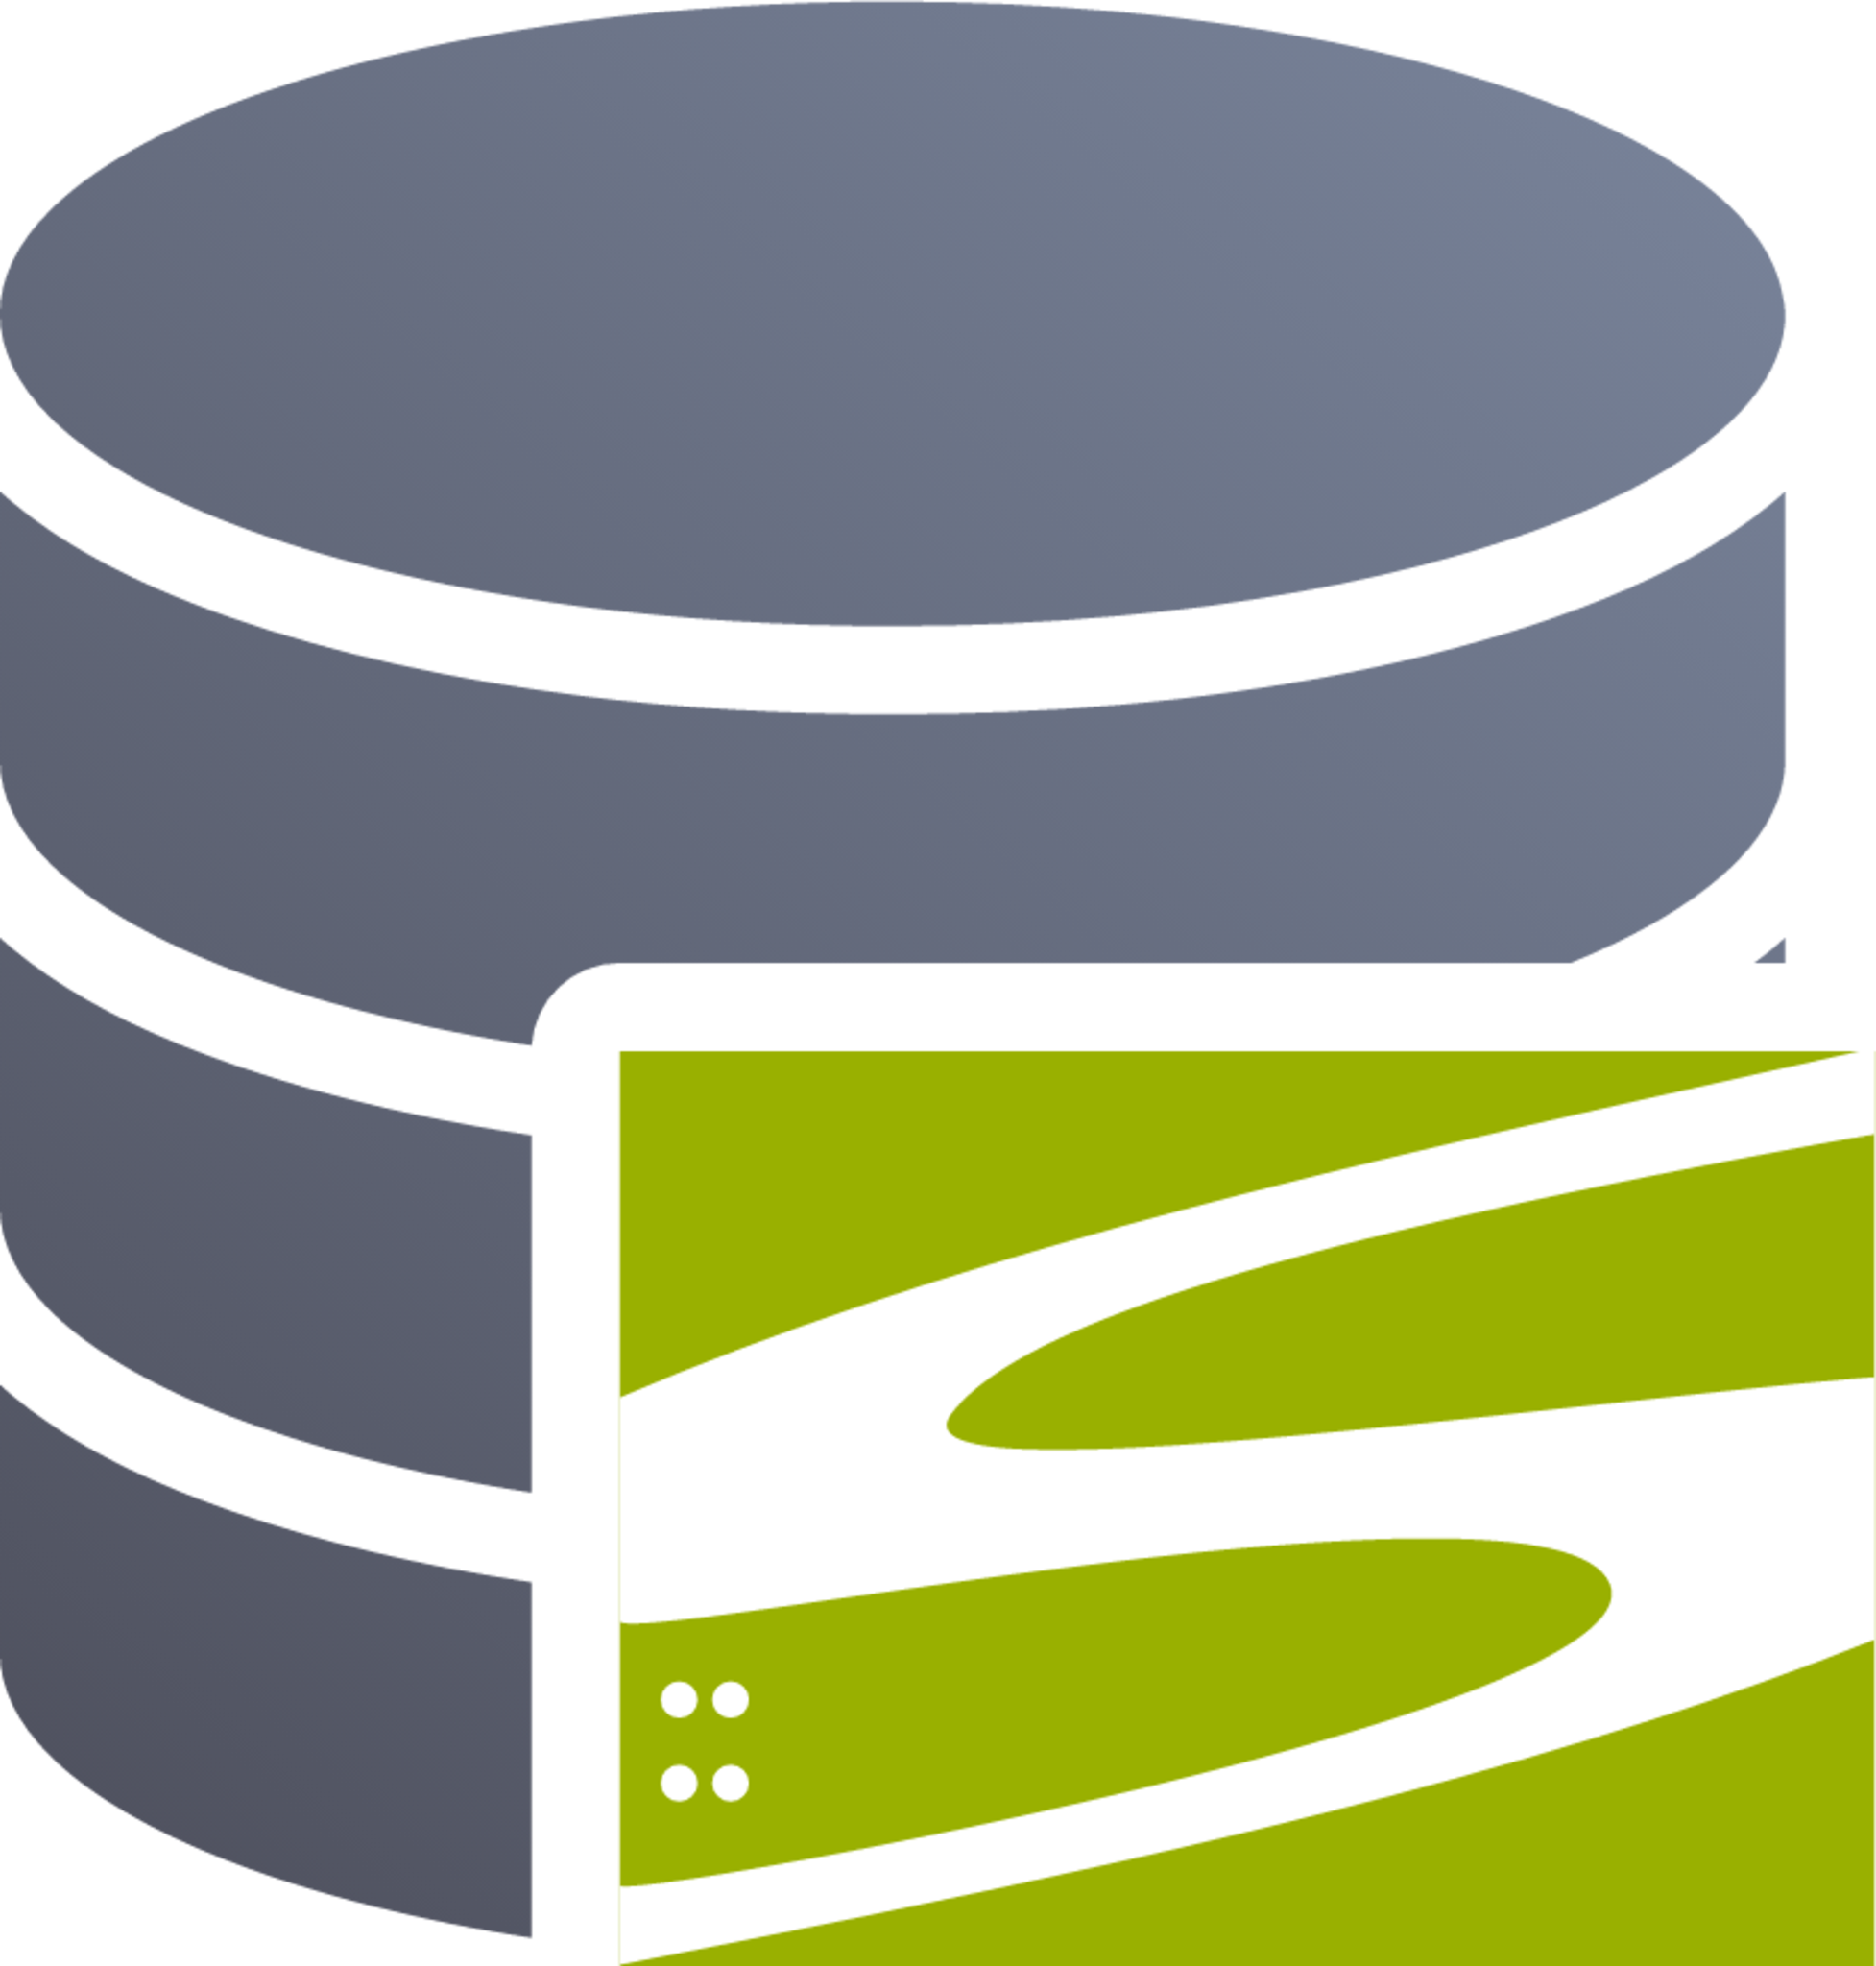 database vcs subversion icon